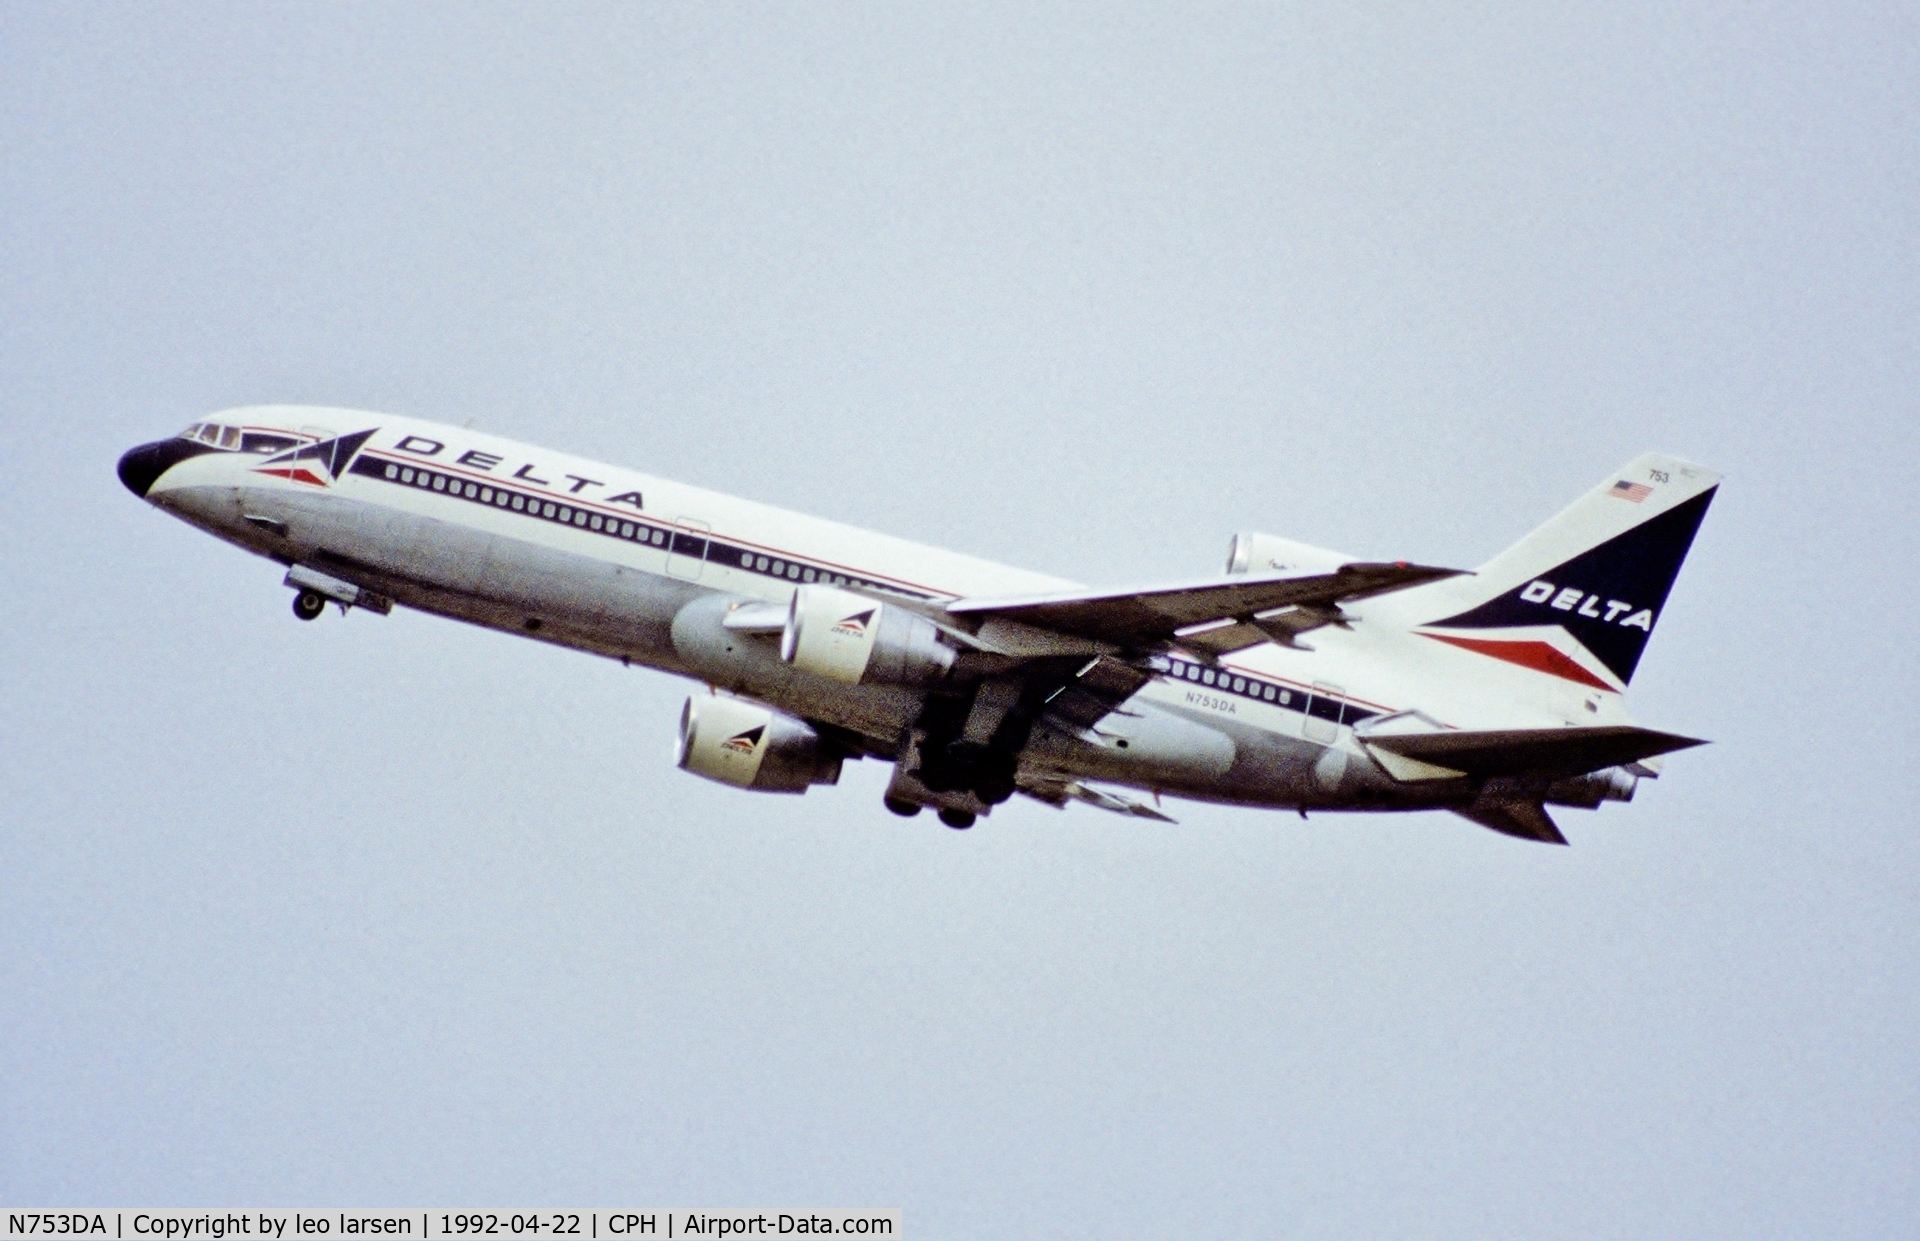 N753DA, 1980 Lockheed L-1011-385-3 500 TriStar C/N 1189, Copenhagen 22.4.1992